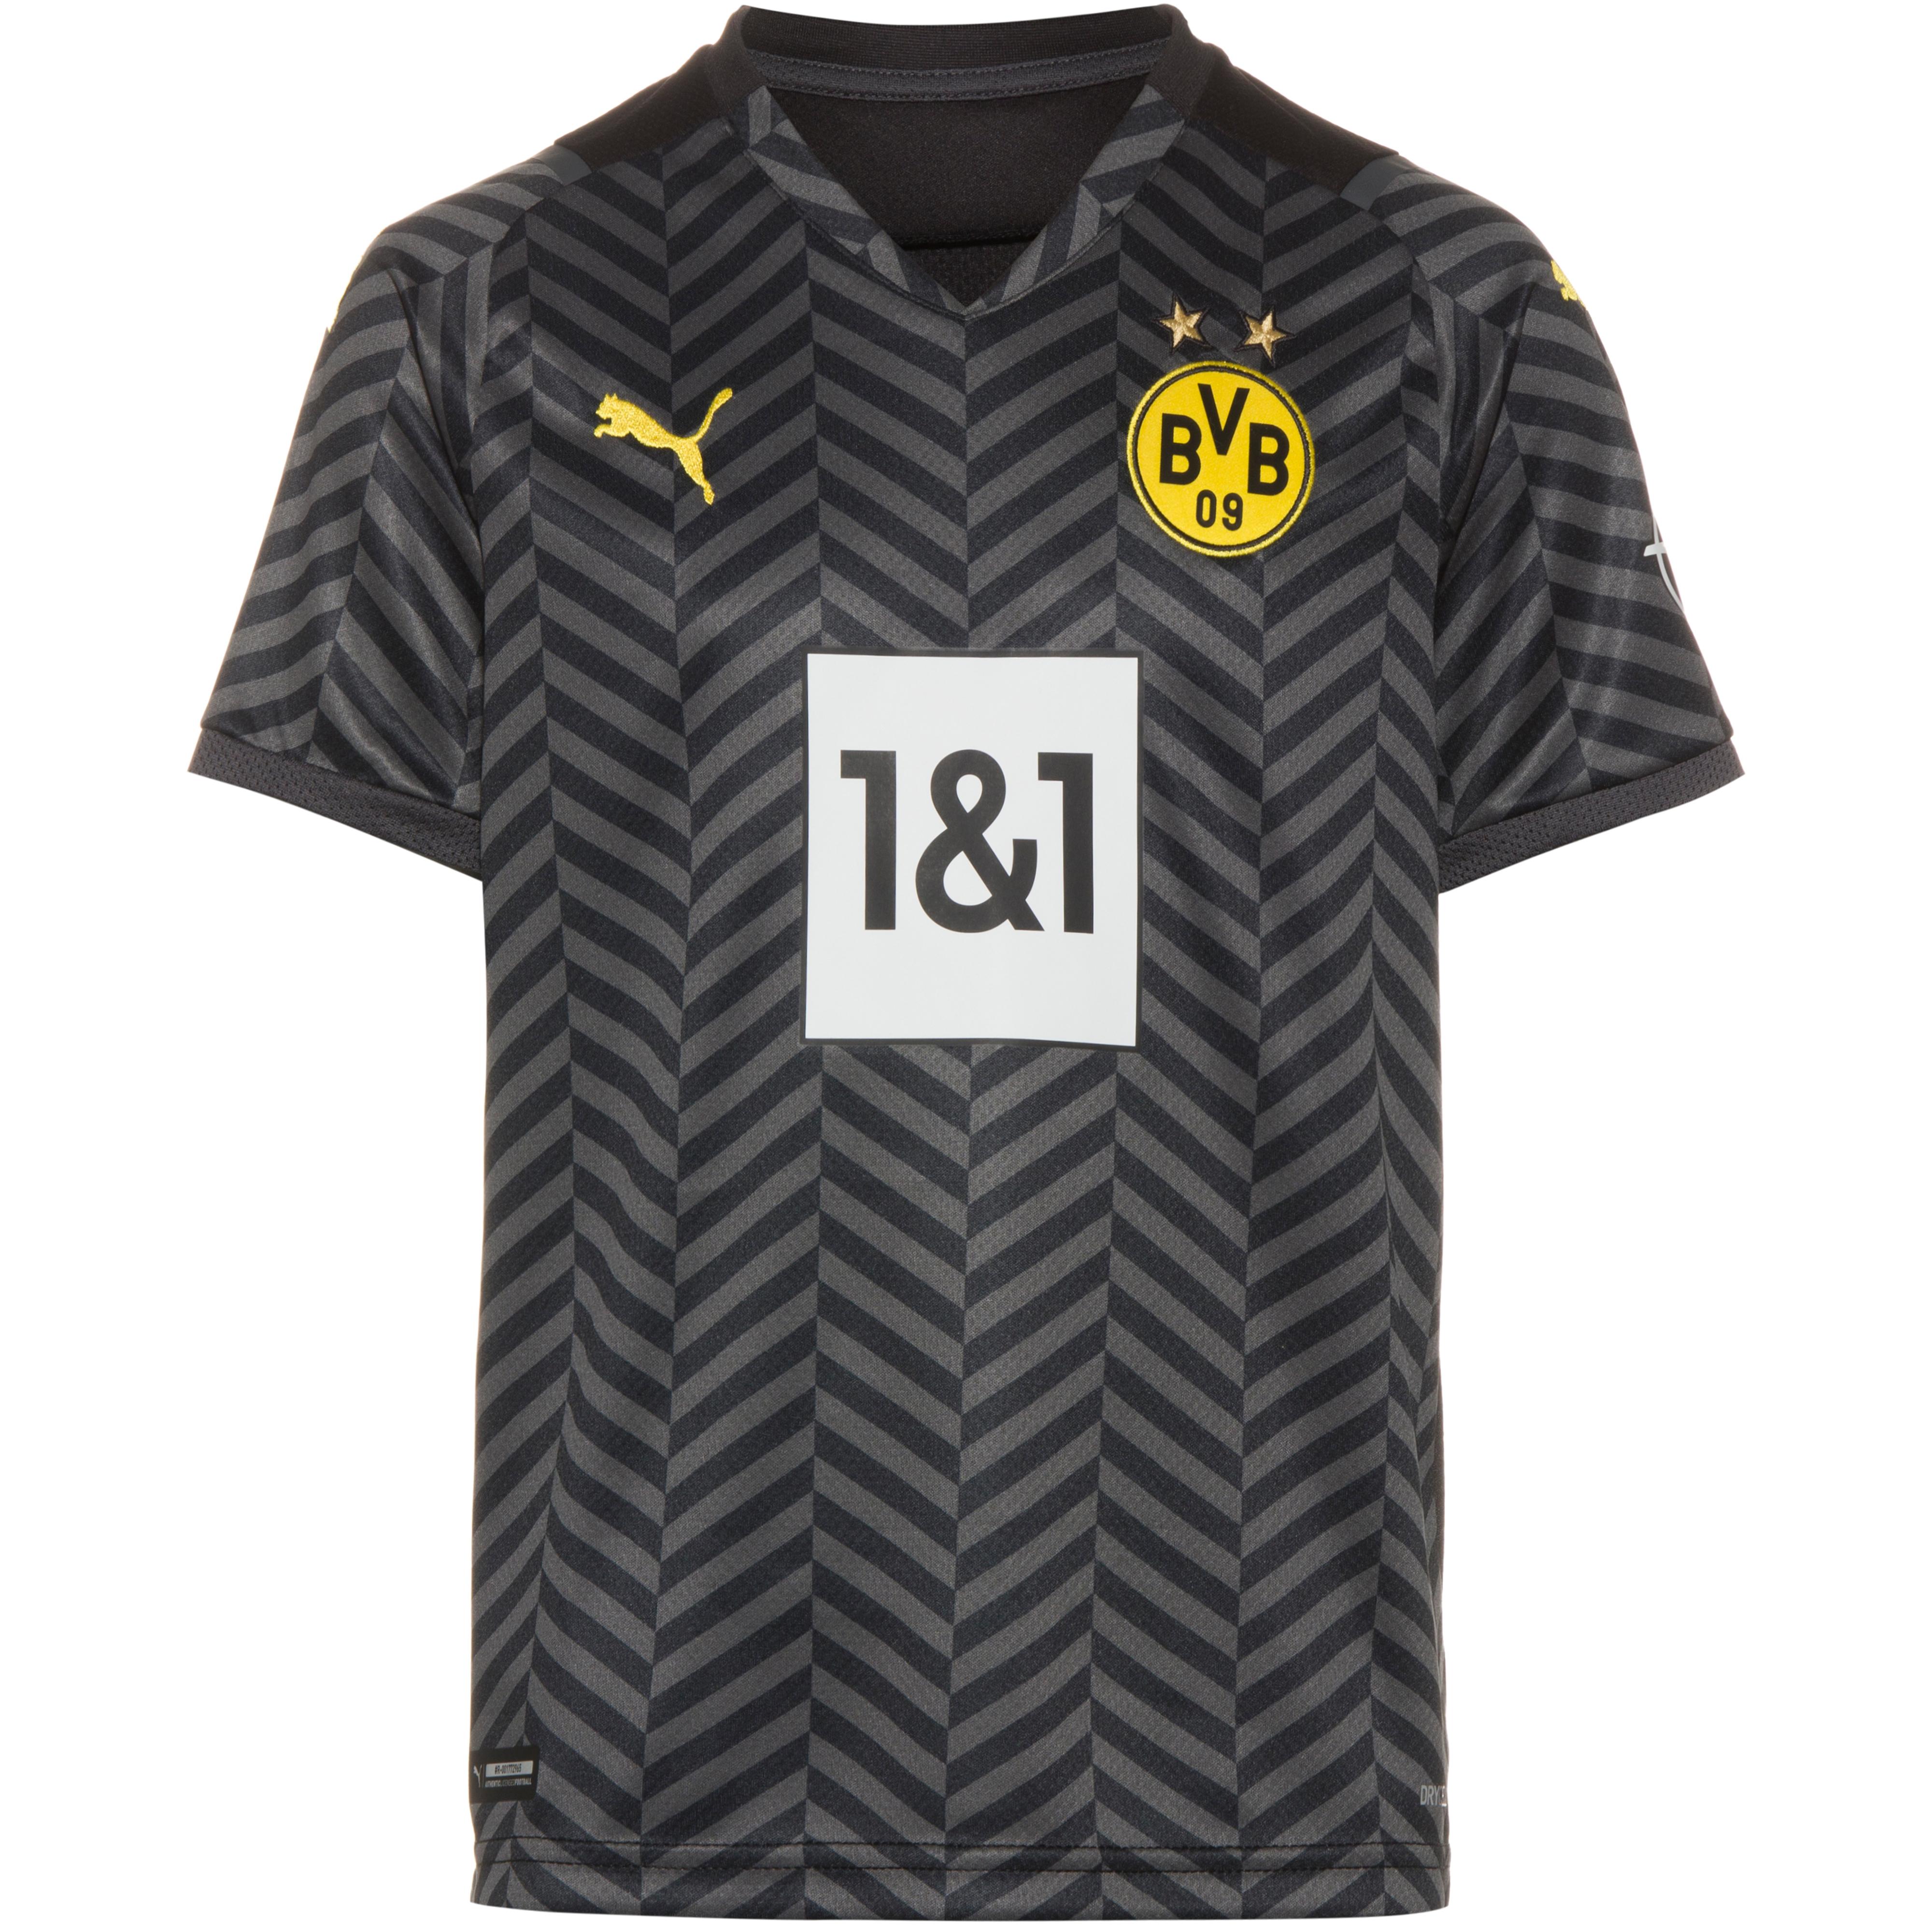 Kinder Fussball Sortiment Von Borussia Dortmund Jetzt Bei Sportscheck